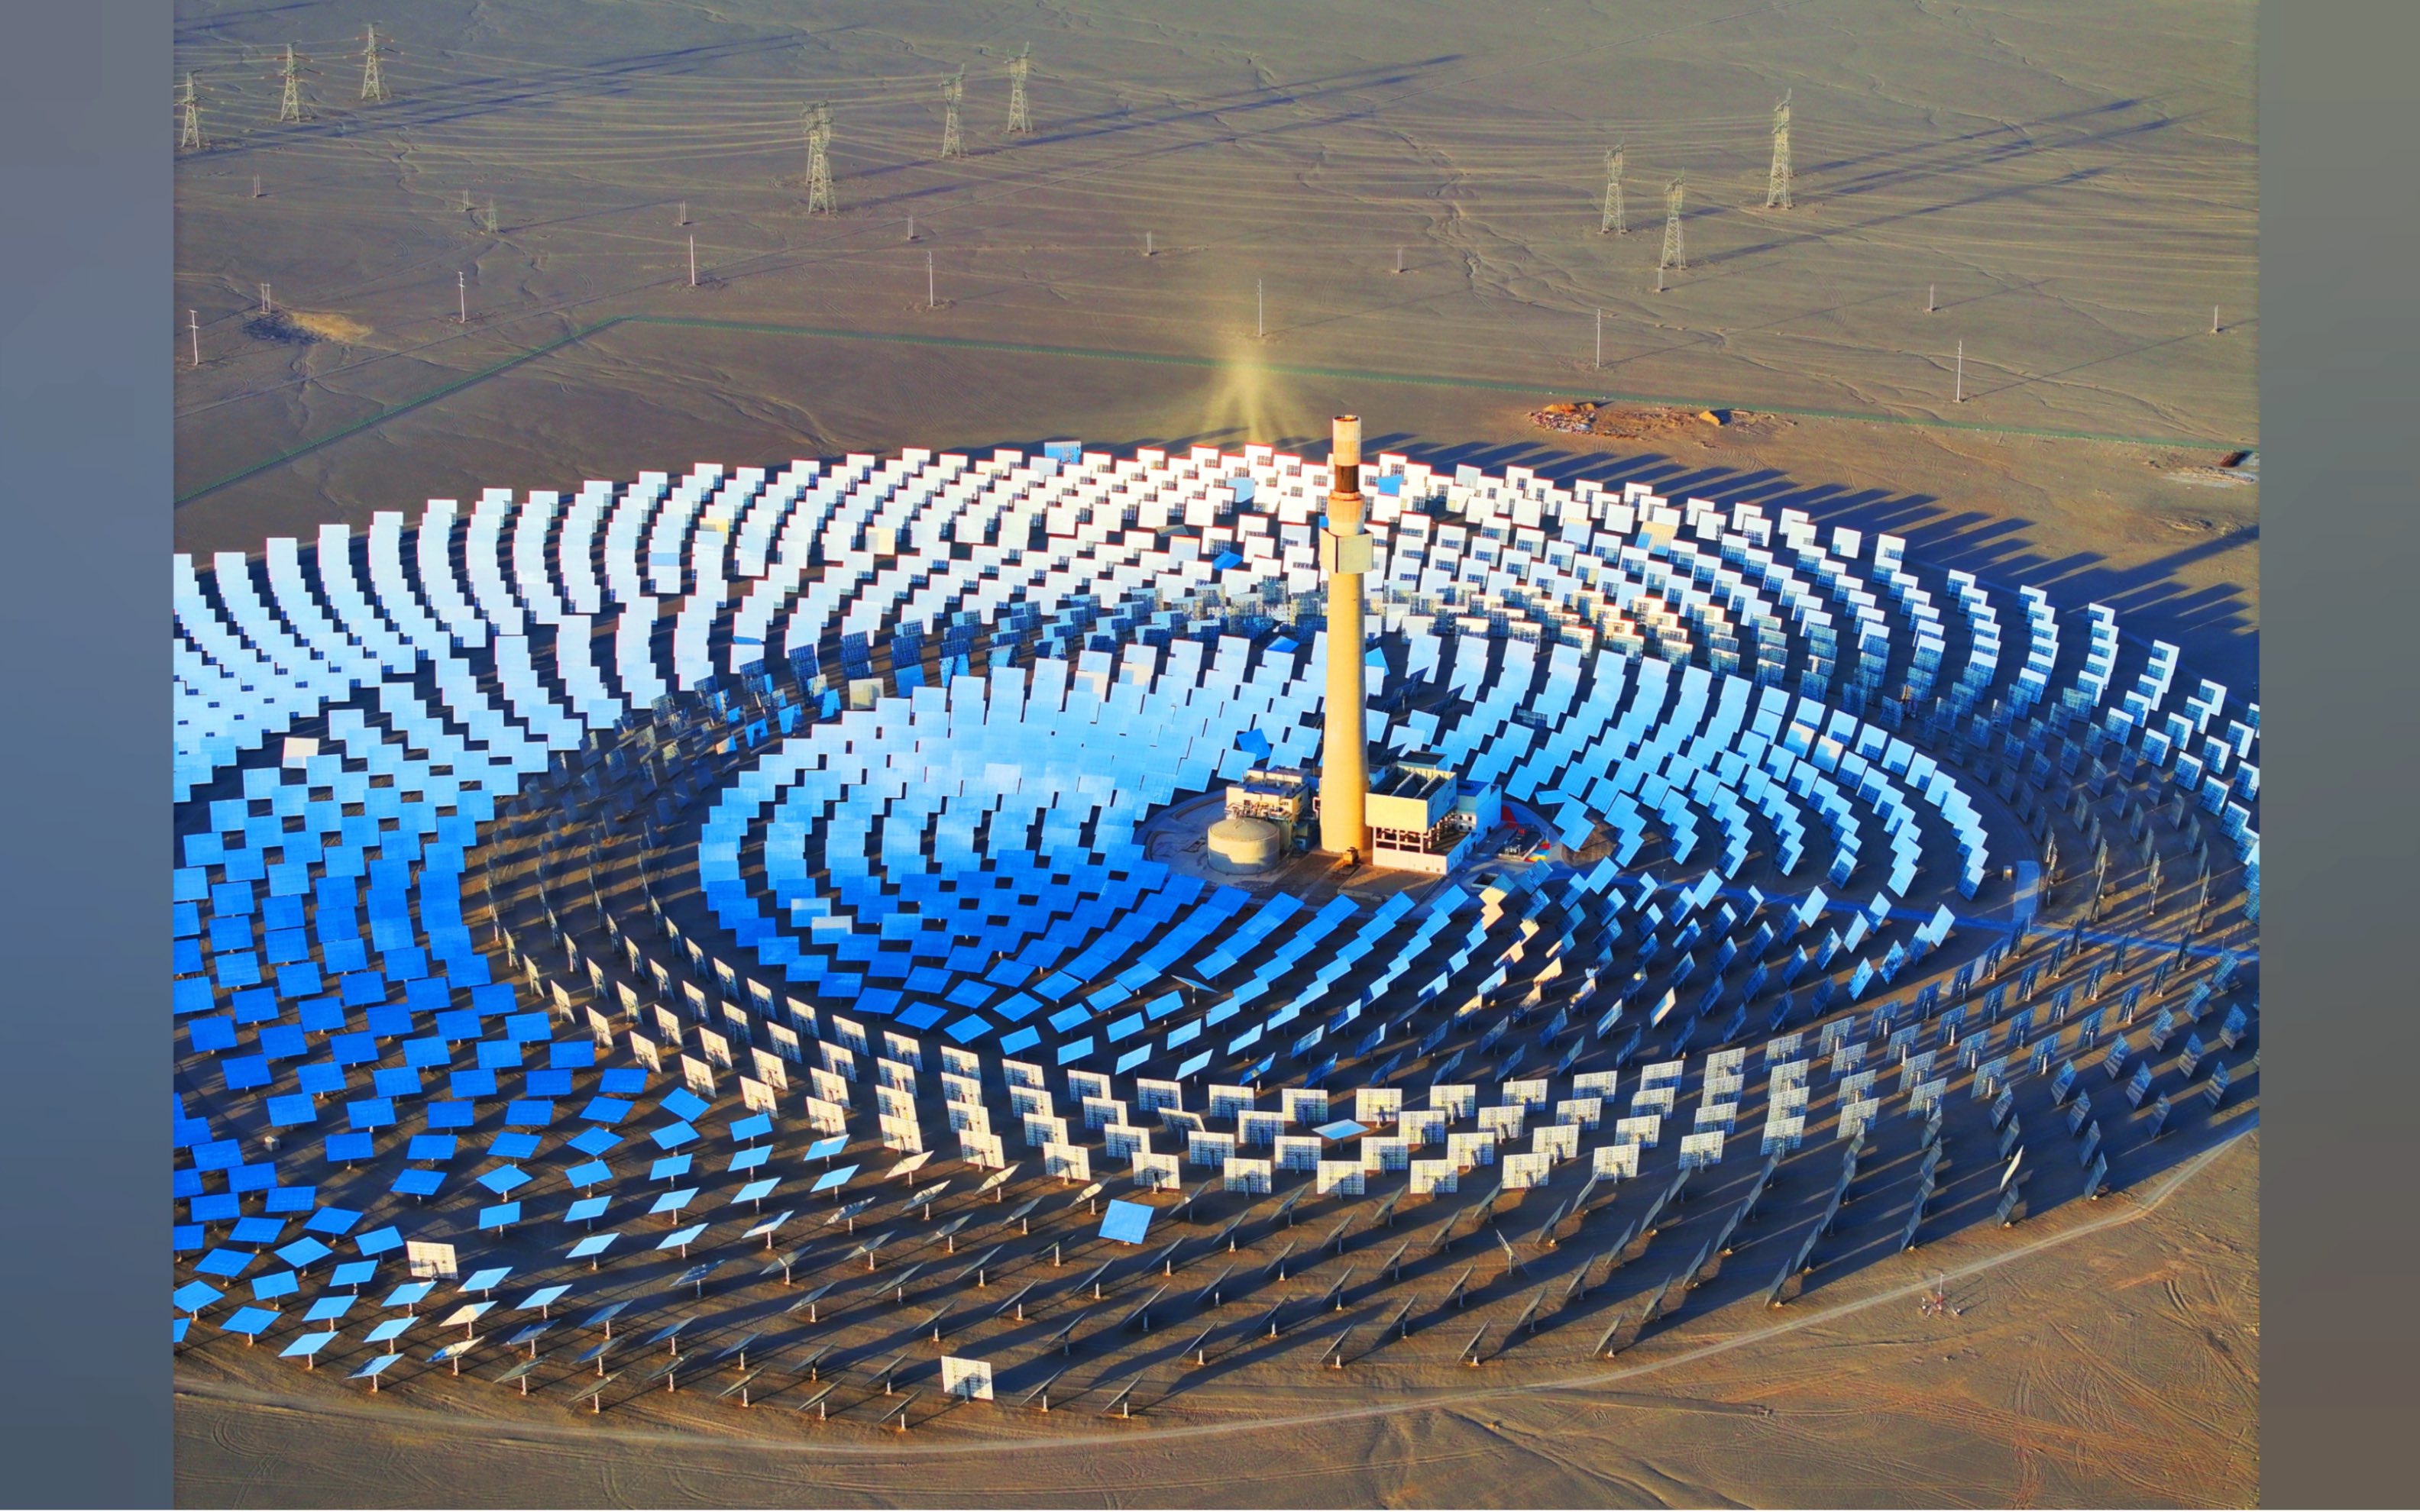 敦煌熔盐塔式光热发电站,亚洲最大的太阳能光热发电站,科技的力量勾勒